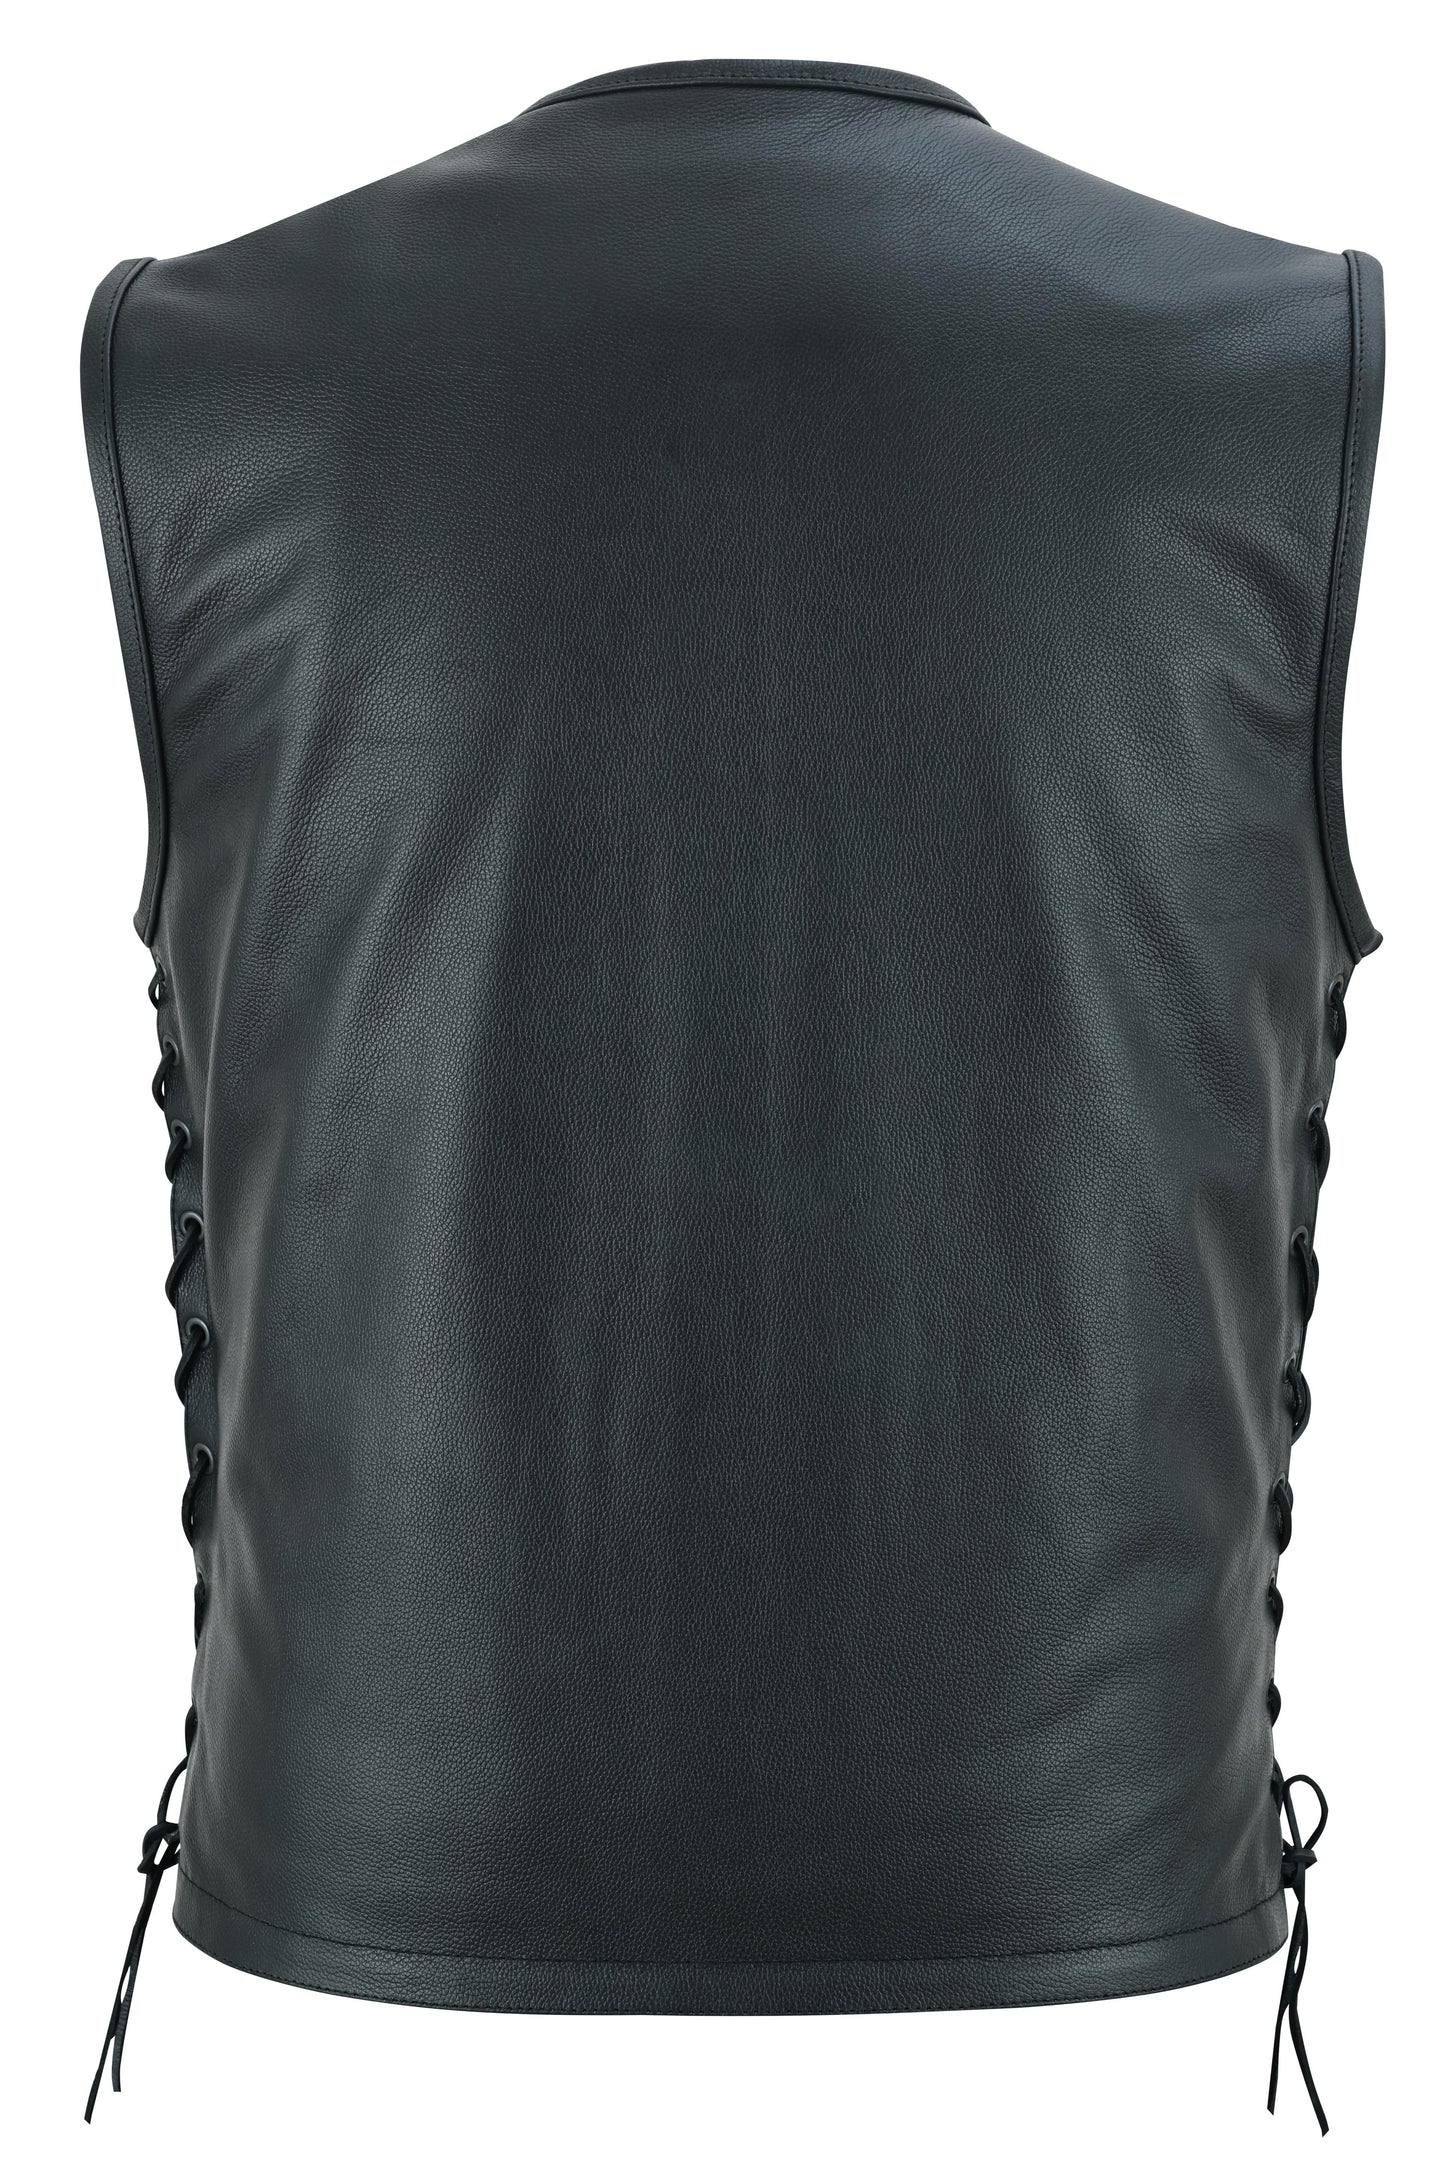 Men's Zipper Front Single Back Panel Concealed Carry Vest